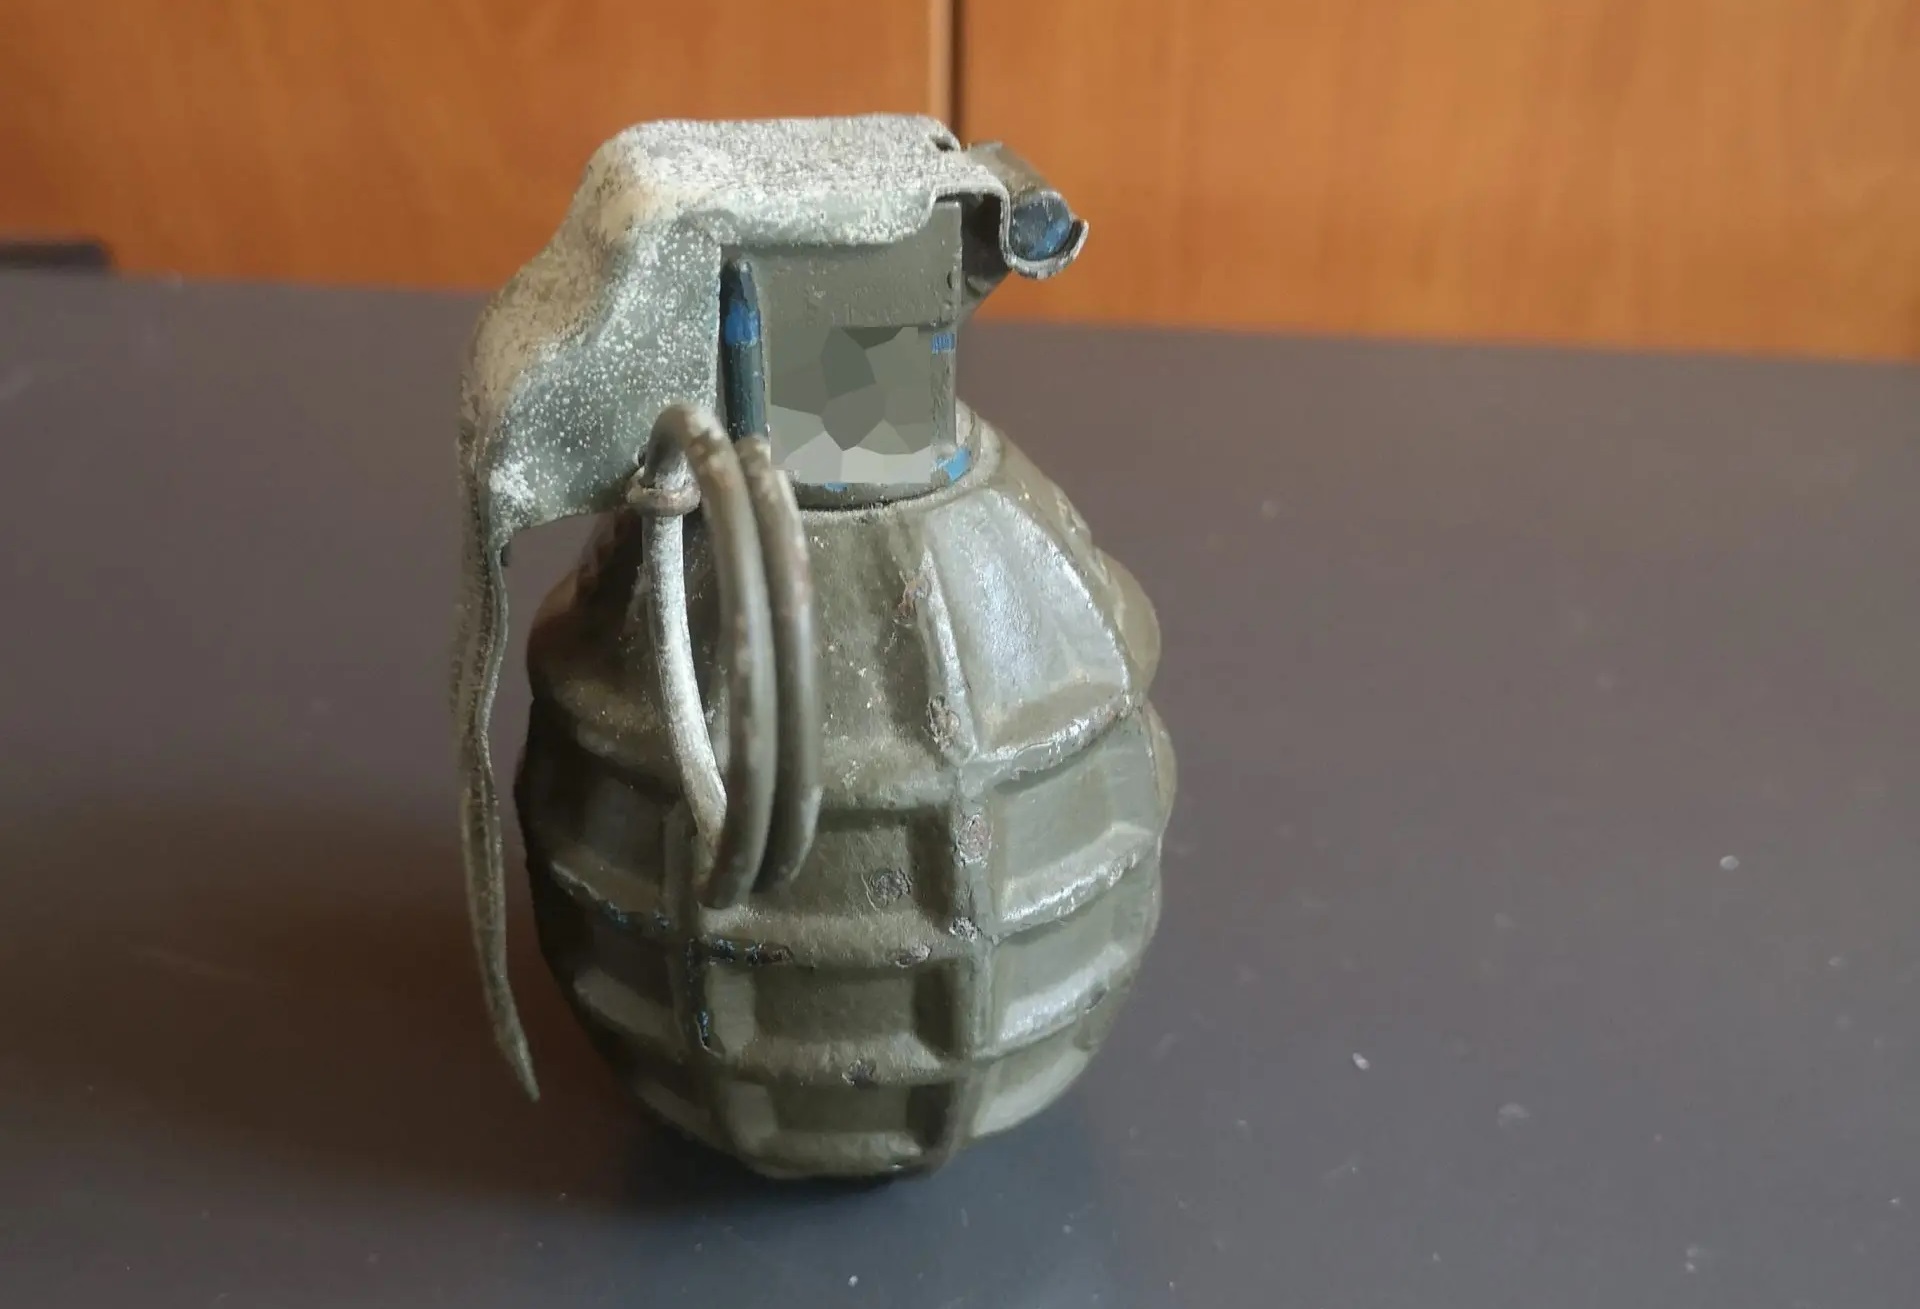 Μεσσηνία: Γυναίκα βρήκε σε αγροικία δύο χειροβομβίδες – Στο σημείο πυροτεχνουργός του στρατού